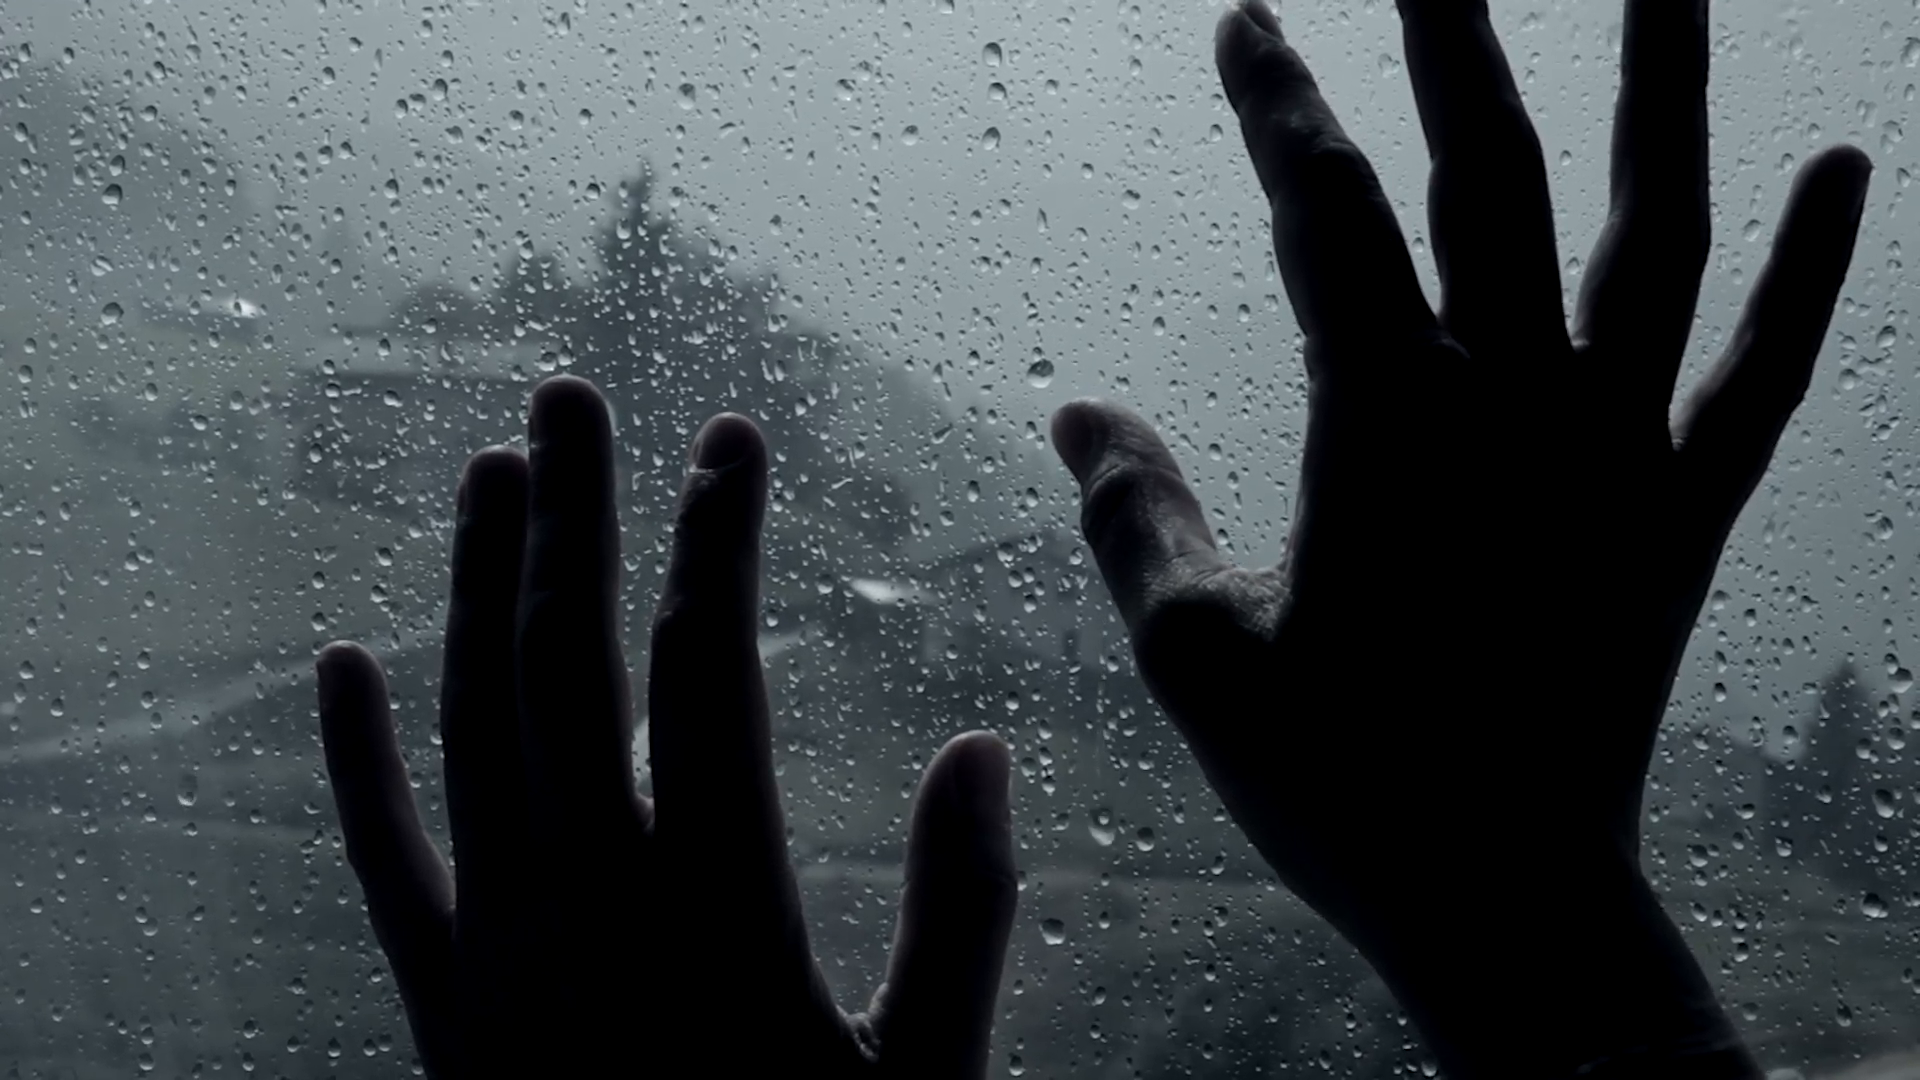 Hình ảnh mưa buồn mang đến những cảm xúc đầy nỗi nhớ nhung của người xem. Hãy đắm mình trong từng giọt mưa rơi và lắng nghe tiếng rì rào của nó mang lại. Xem hình ảnh và cảm nhận thật sâu lắng từ bức tranh mưa buồn này.